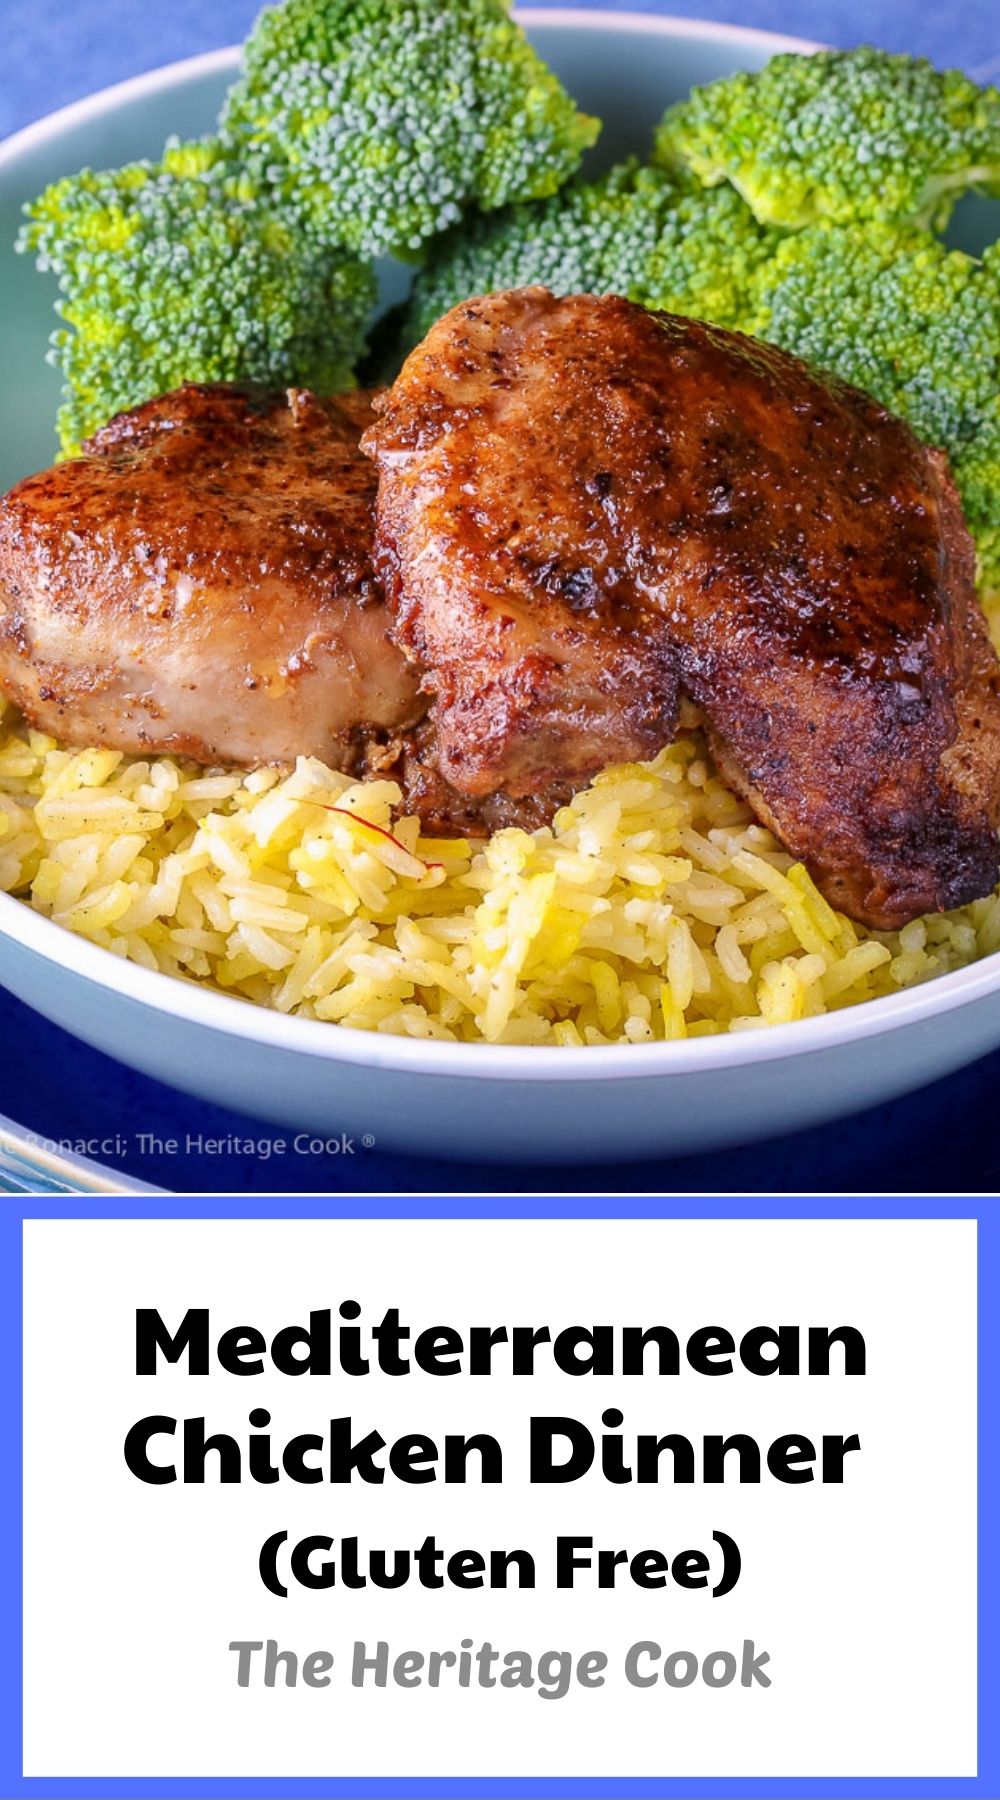 Gluten Free Mediterranean Chicken Dinner © 2022 Jane Bonacci, The Heritage Cook